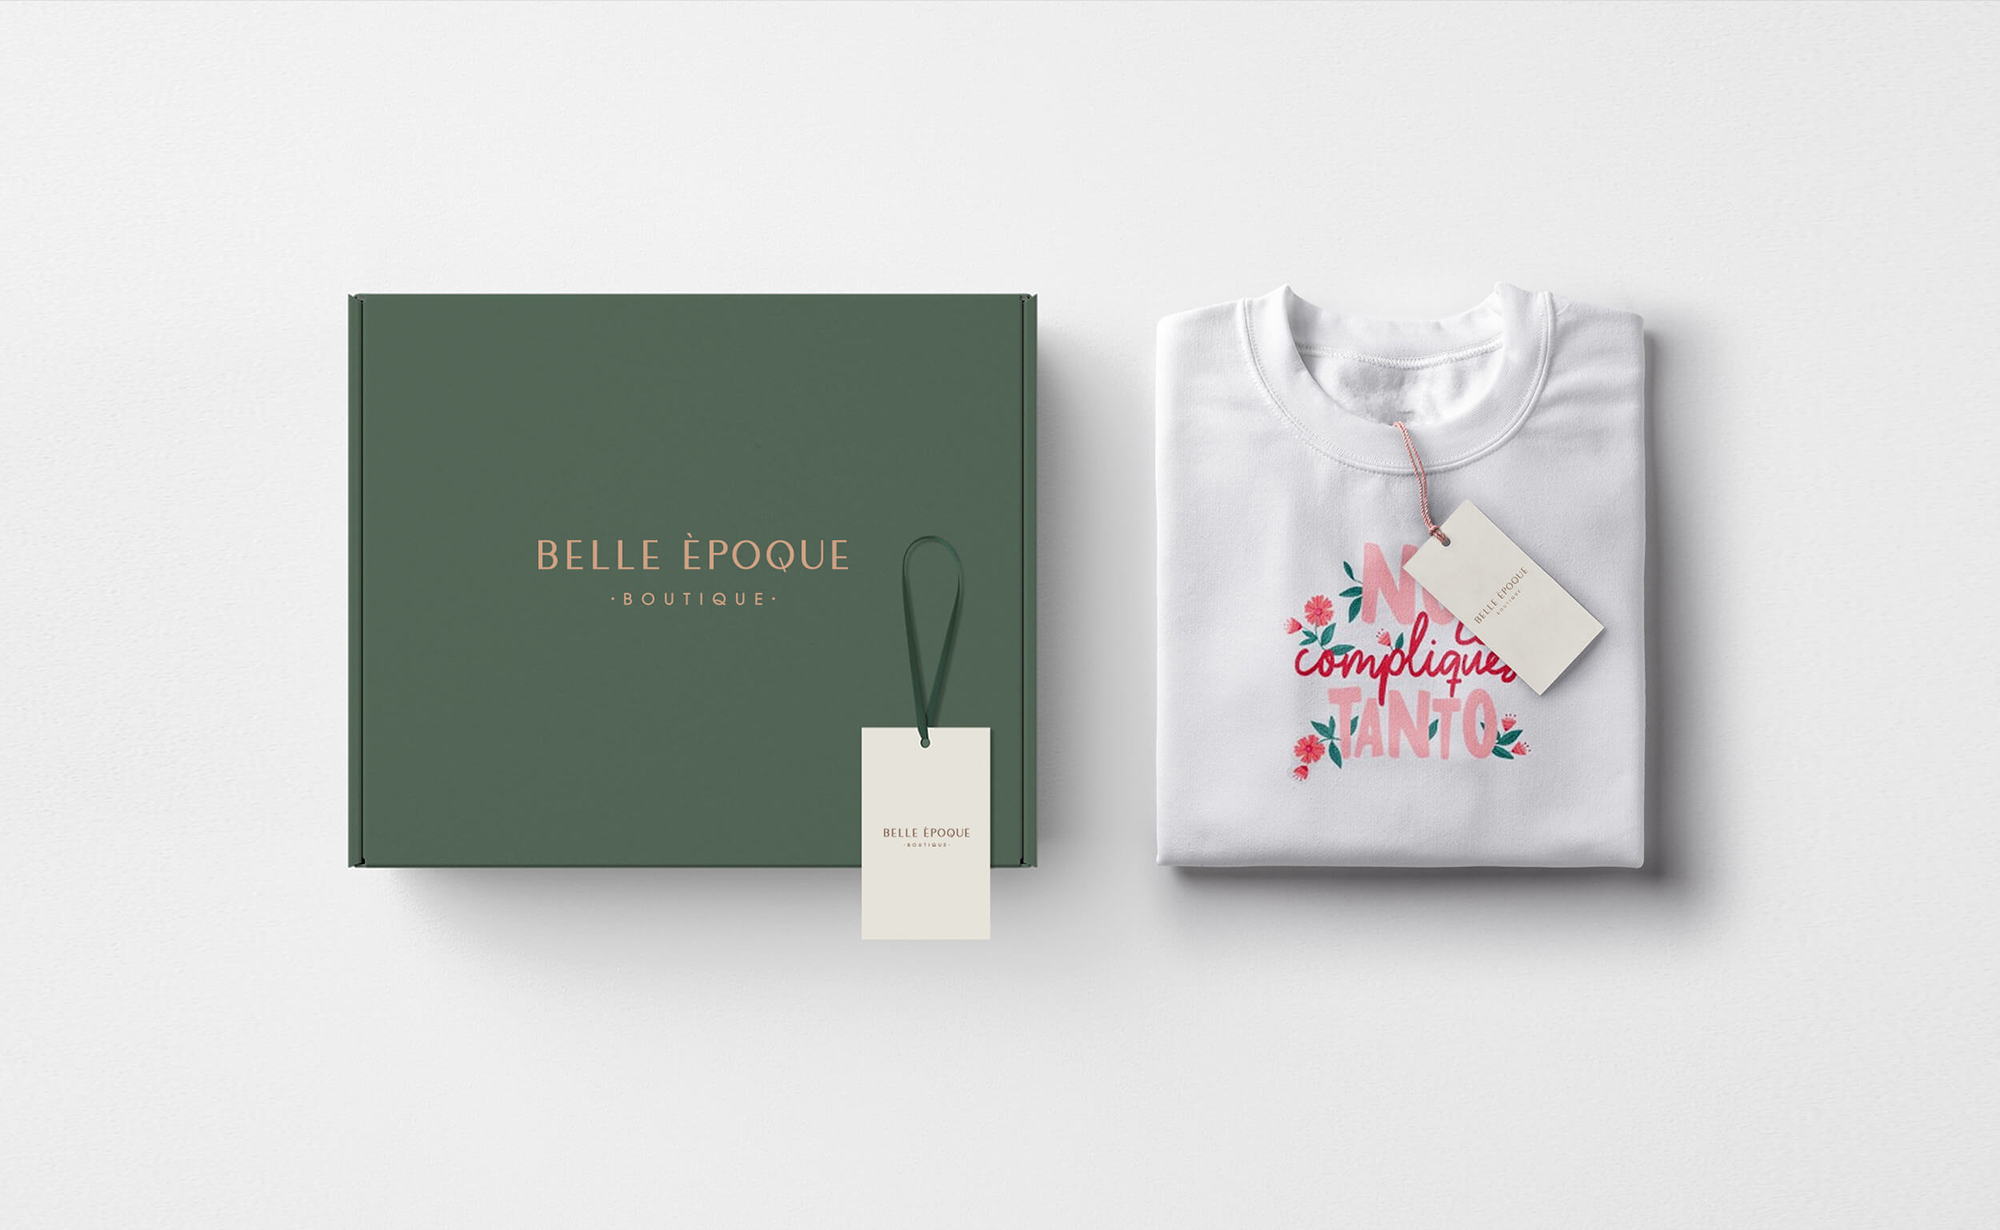 Diseño y desarrollo de identidad visual corporativa para Belle Èpoque. Packaging. Caja de envíos.